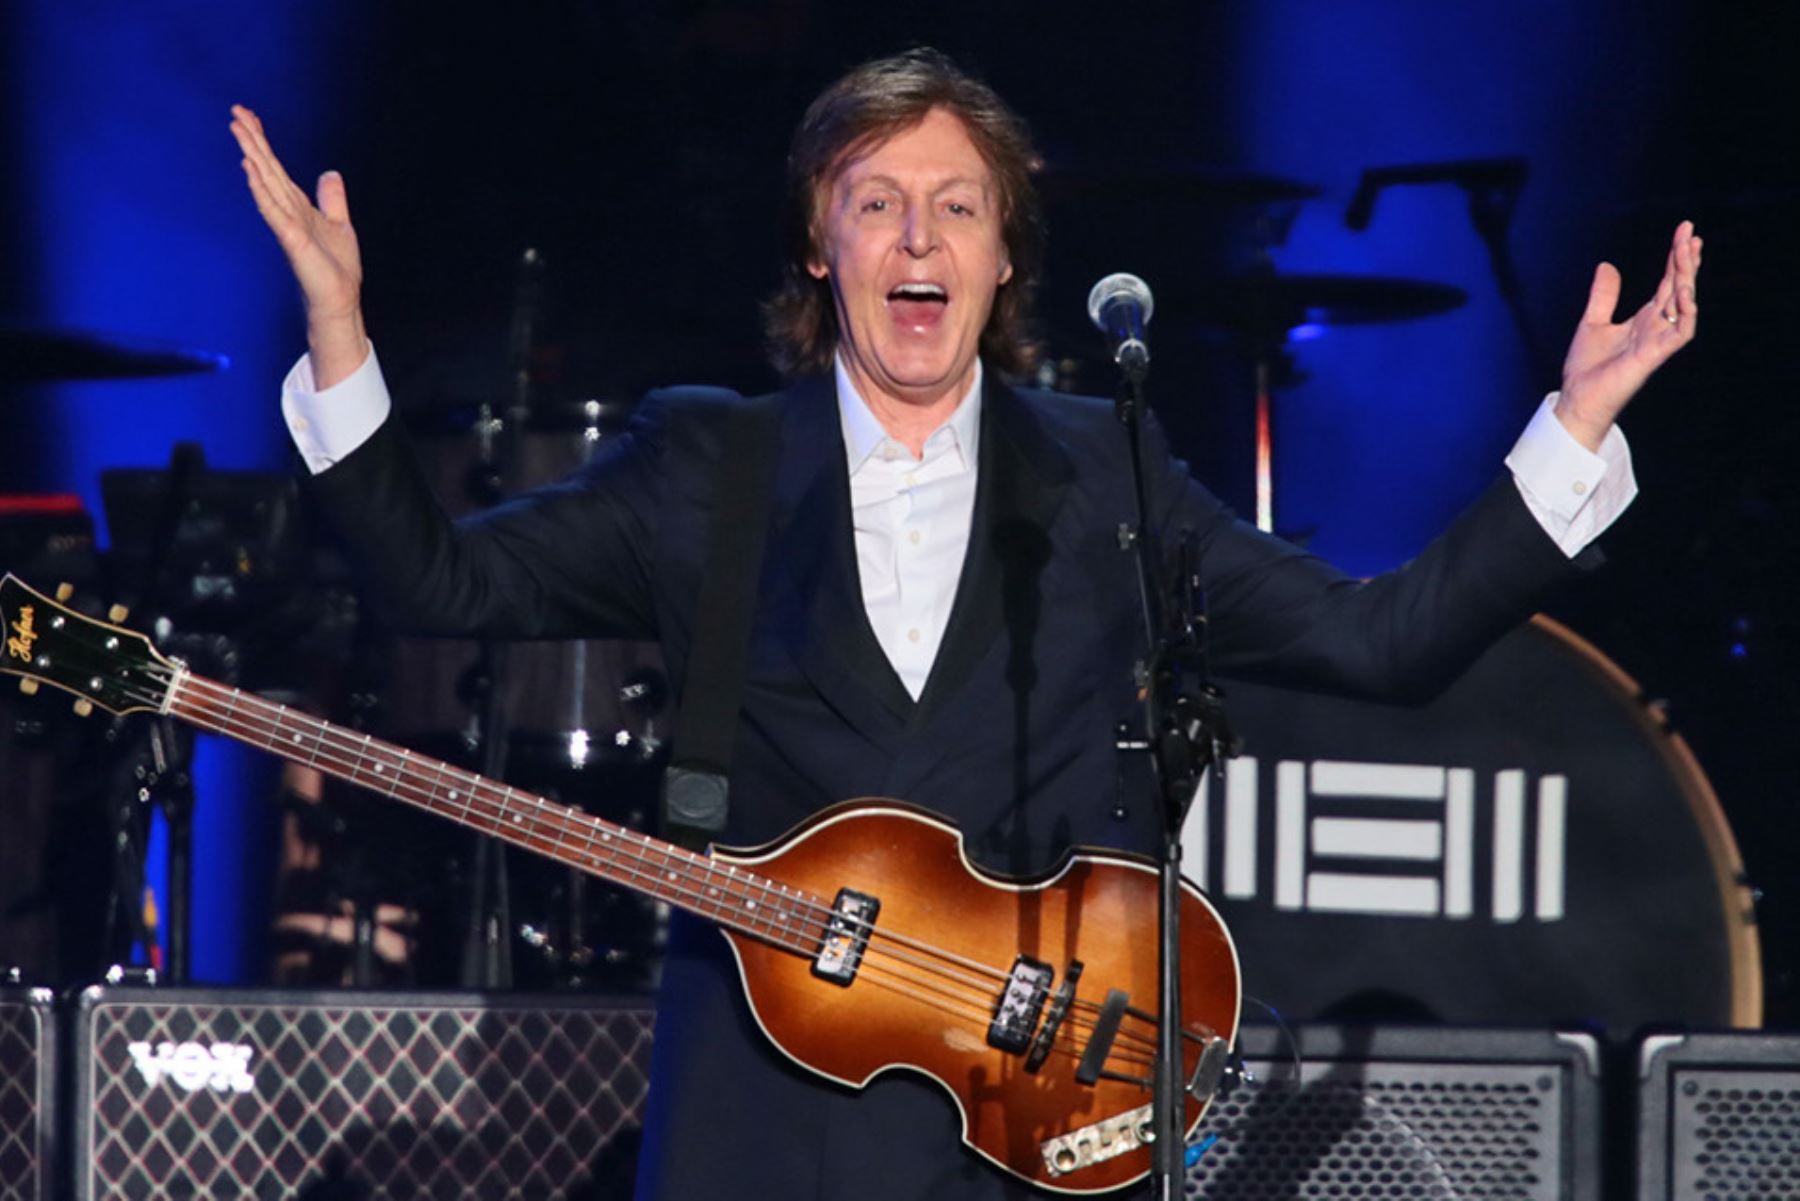 Fotografía tomada el 26 de abril de 2014. Paul McCartney deslumbró y cautivó a miles de fanáticos en un inolvidable concierto en Lima. Foto: ANDINA/Carlos Lezama Villantoy